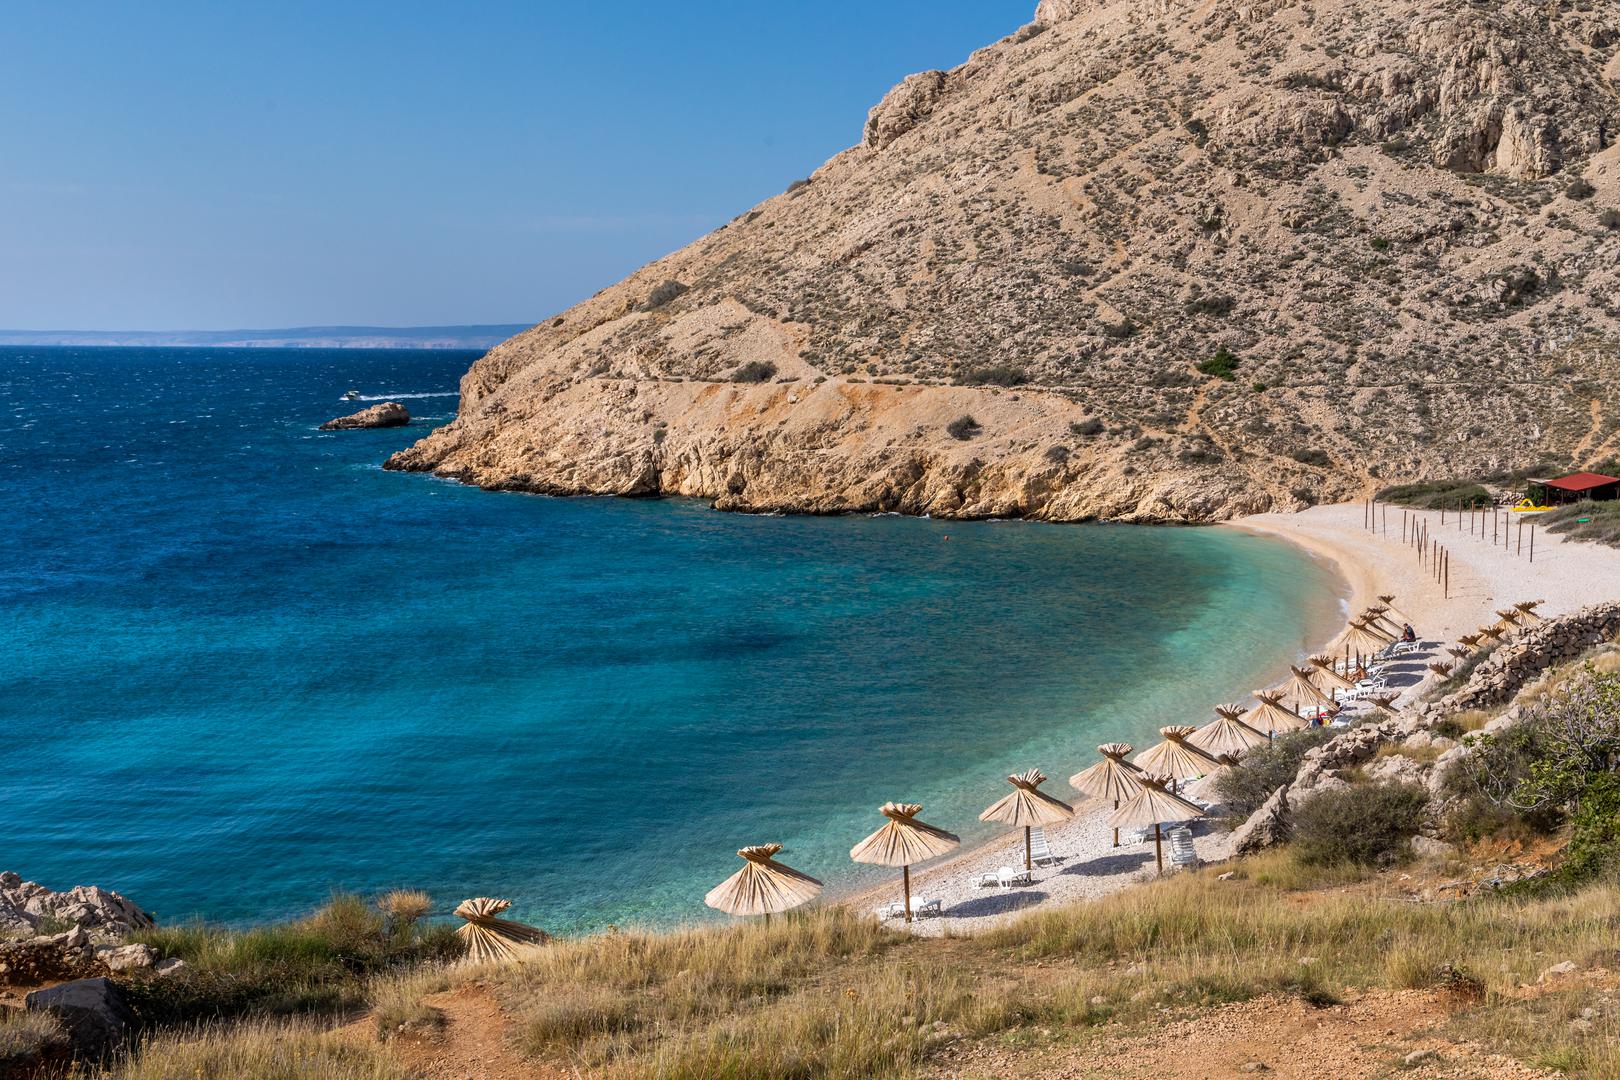 Ostale hrvatske plaže koje su dospjele na popis najboljih plaža BookRetreatsa uključuju Galebove stijene u Puli na 8. mjestu, plažu Mala Raduča u Primoštenu na 9. te uvalu Oprna na otoku Krku na 18. mjestu.